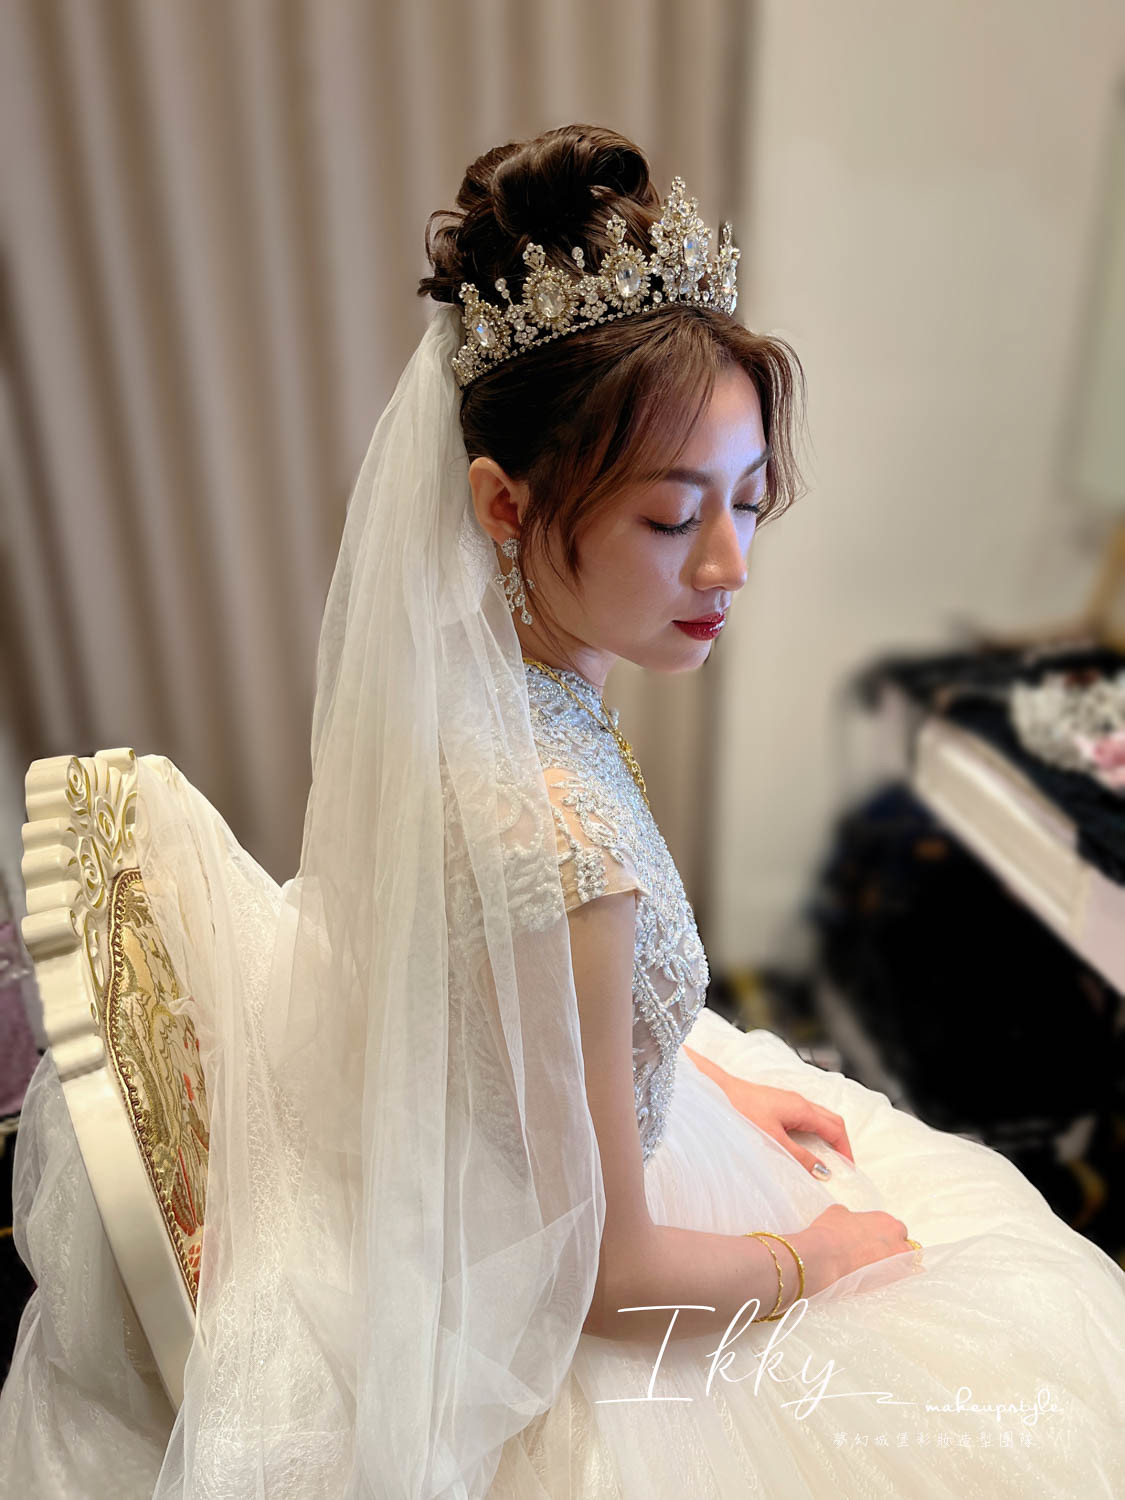 【新秘Ikky】bride雅婷 訂結婚造型 / 新中式,女神風